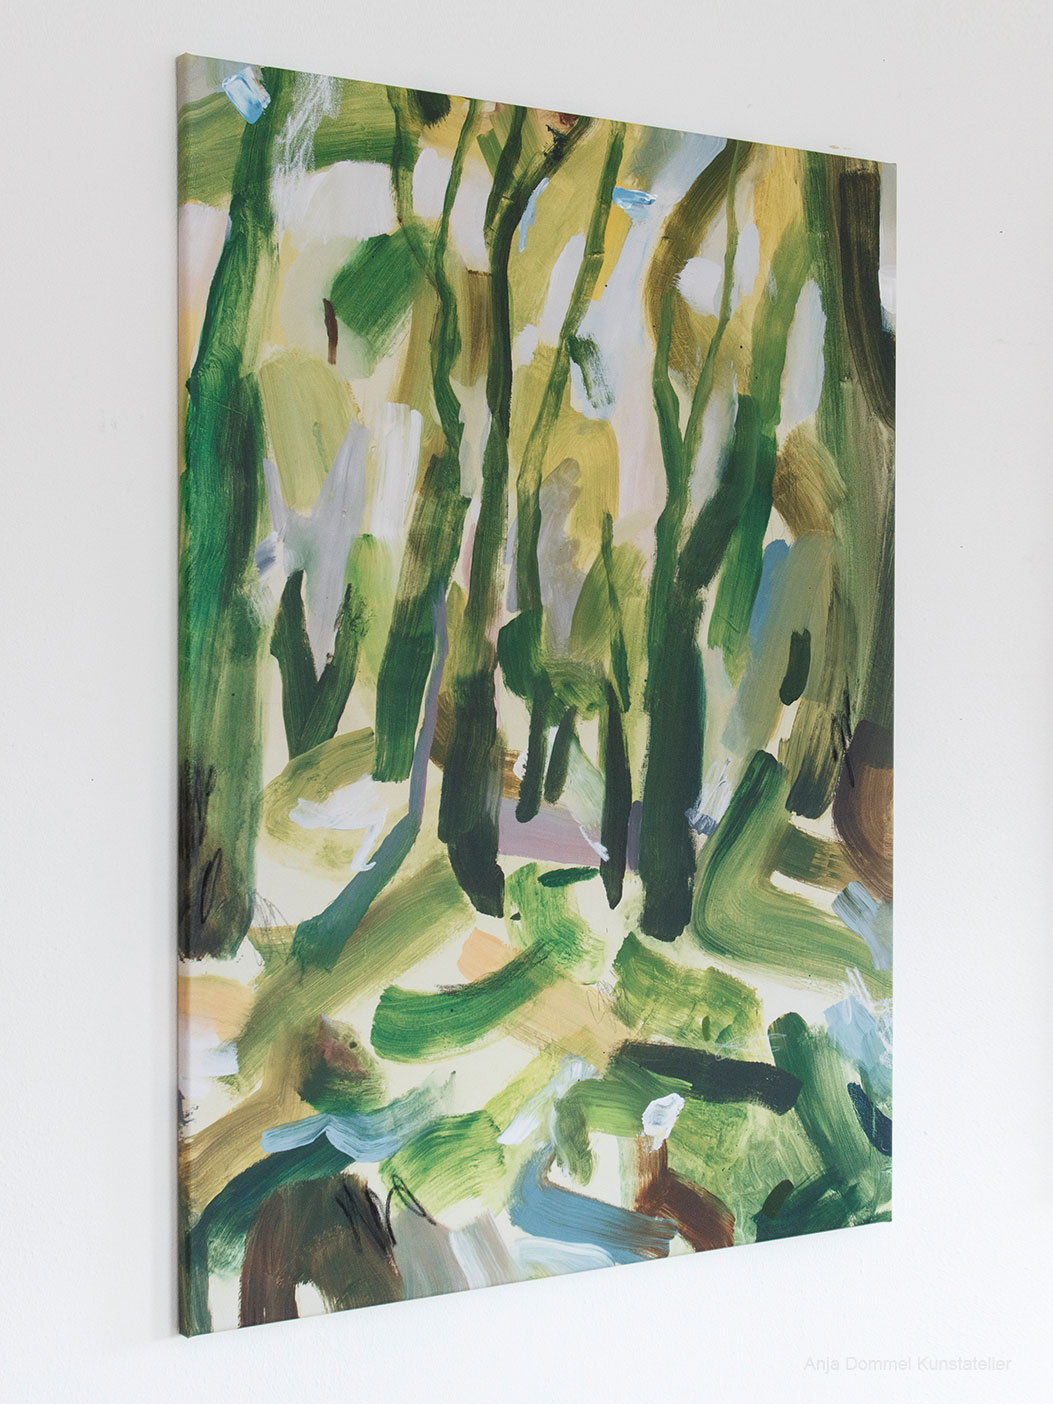 Hochwertiger Kunstdruck eines Wald-Kunstwerks in den schönsten Grüntönen als Leinwandbild in limitierter Auflage